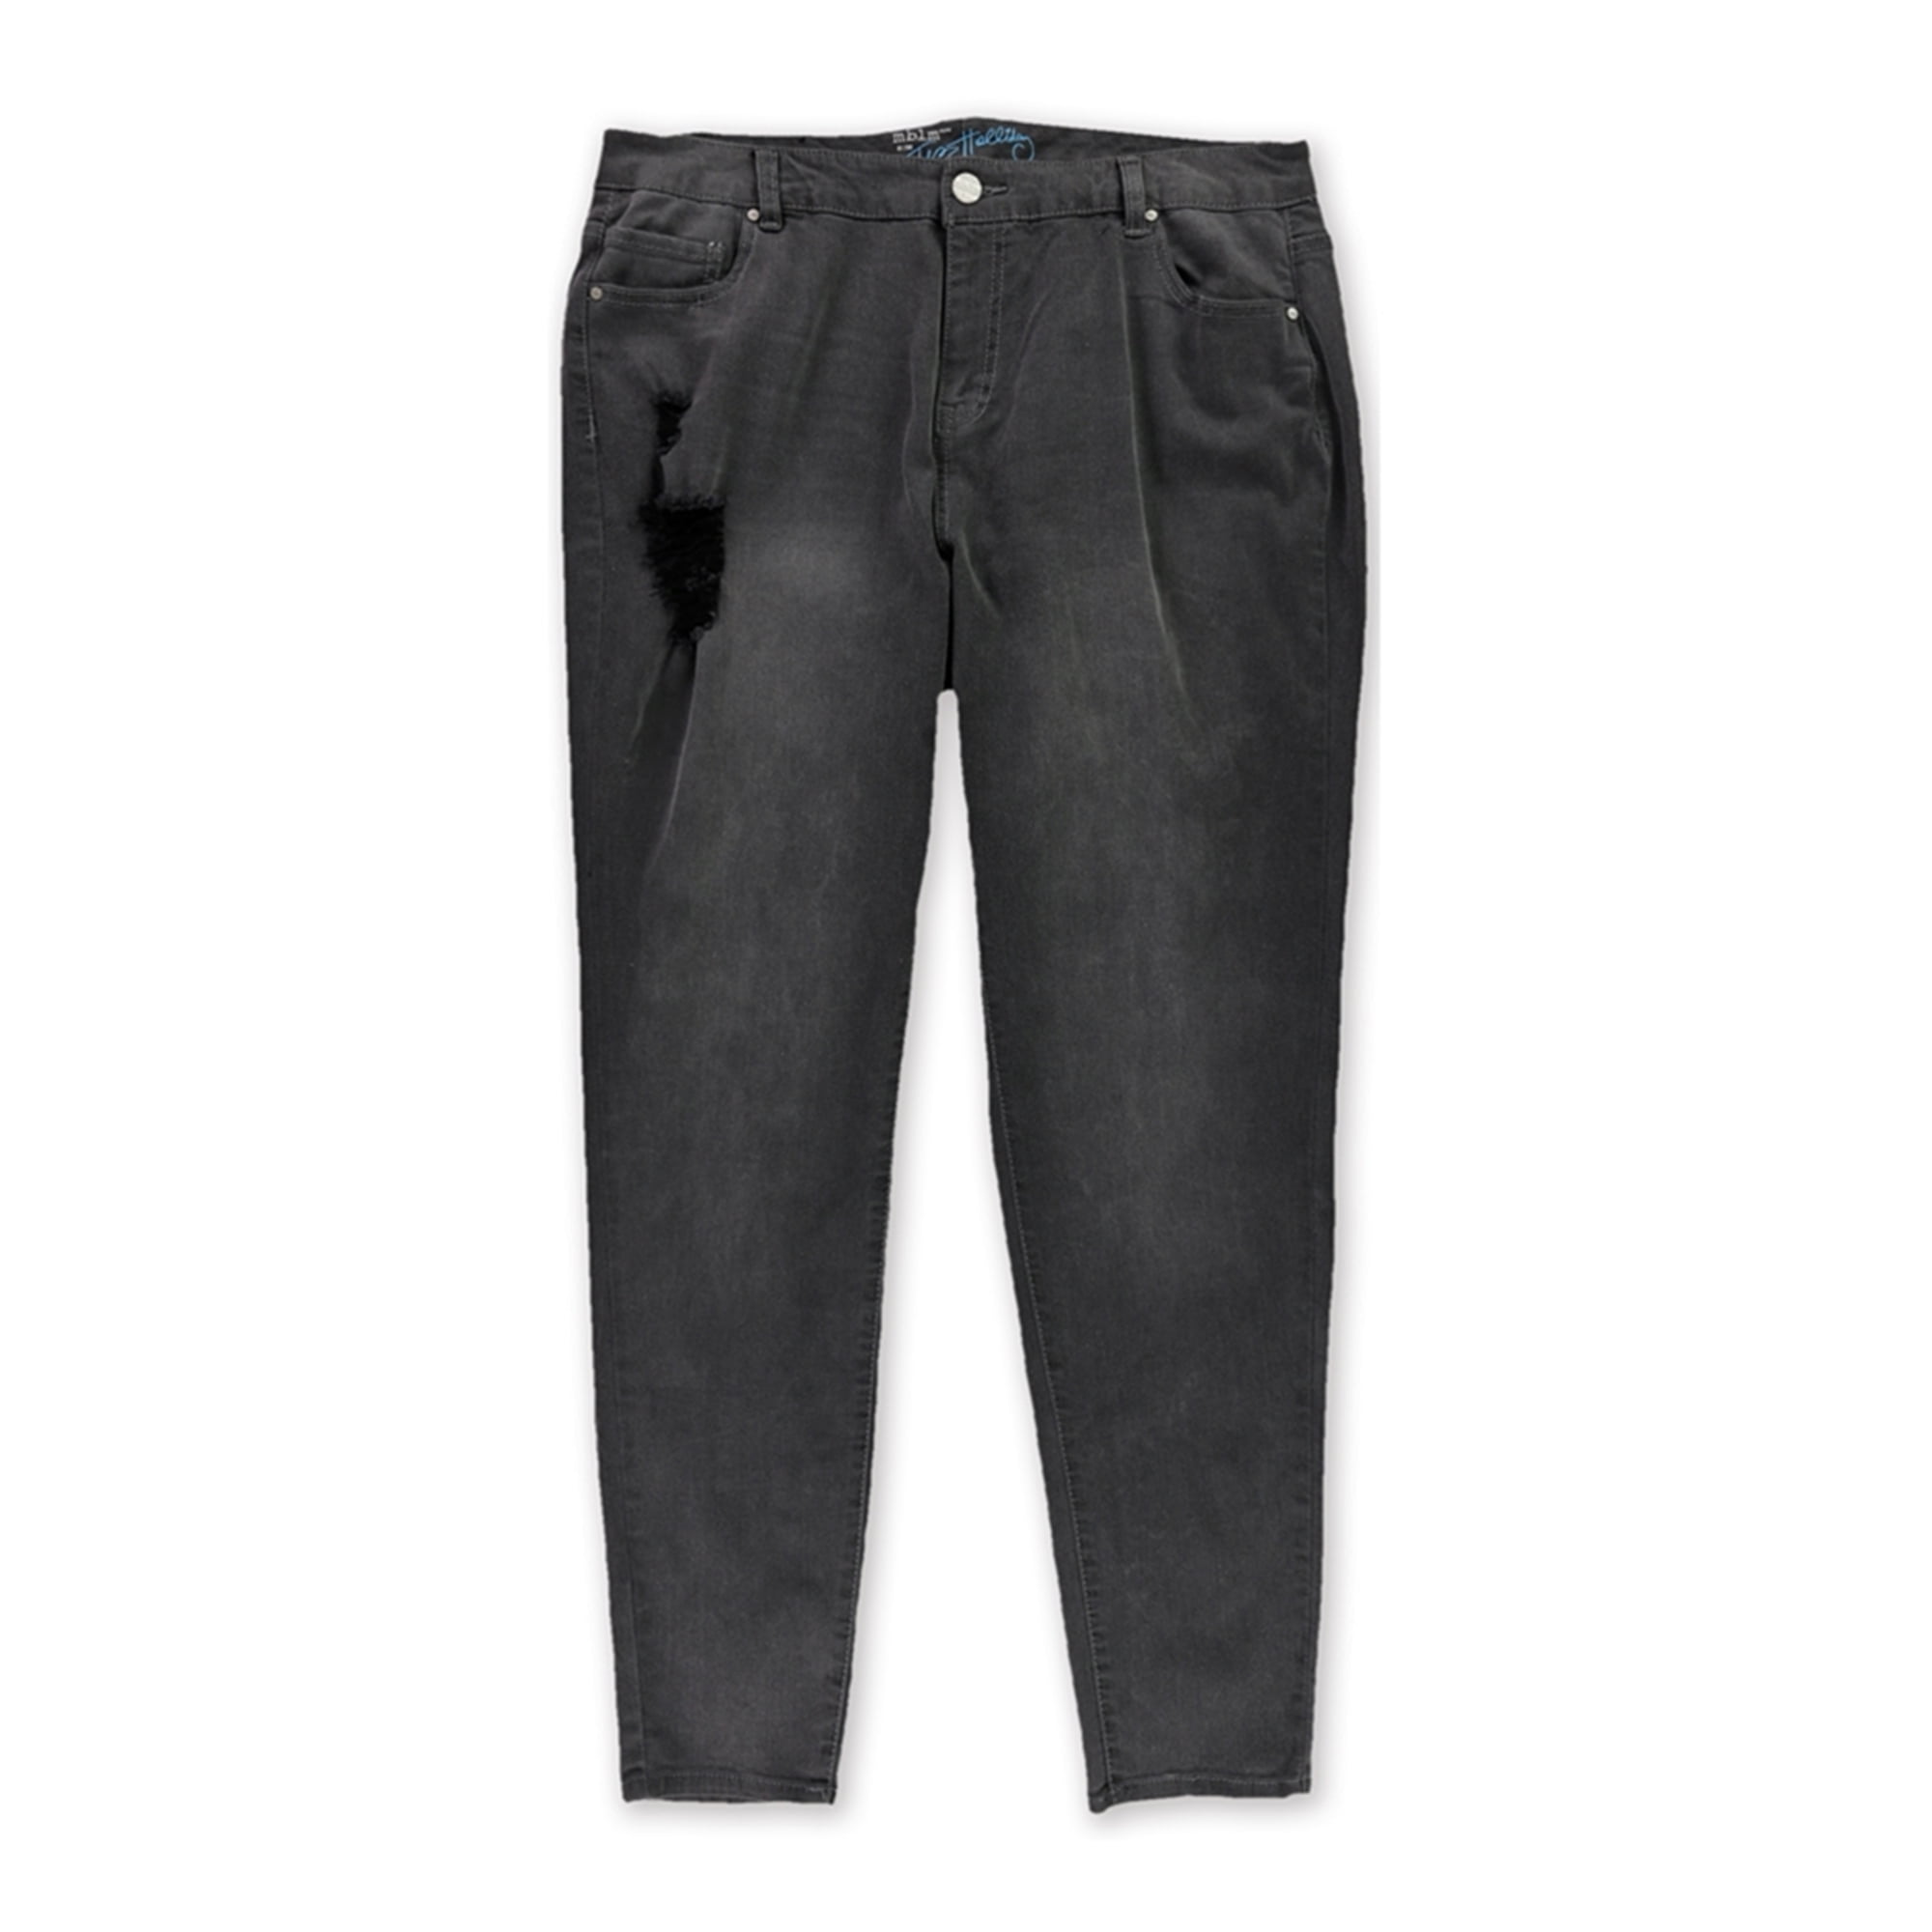 Bulwark 22 X 34 Blue Denim Cotton Flame Resistant Denim Jeans With Button Closure 